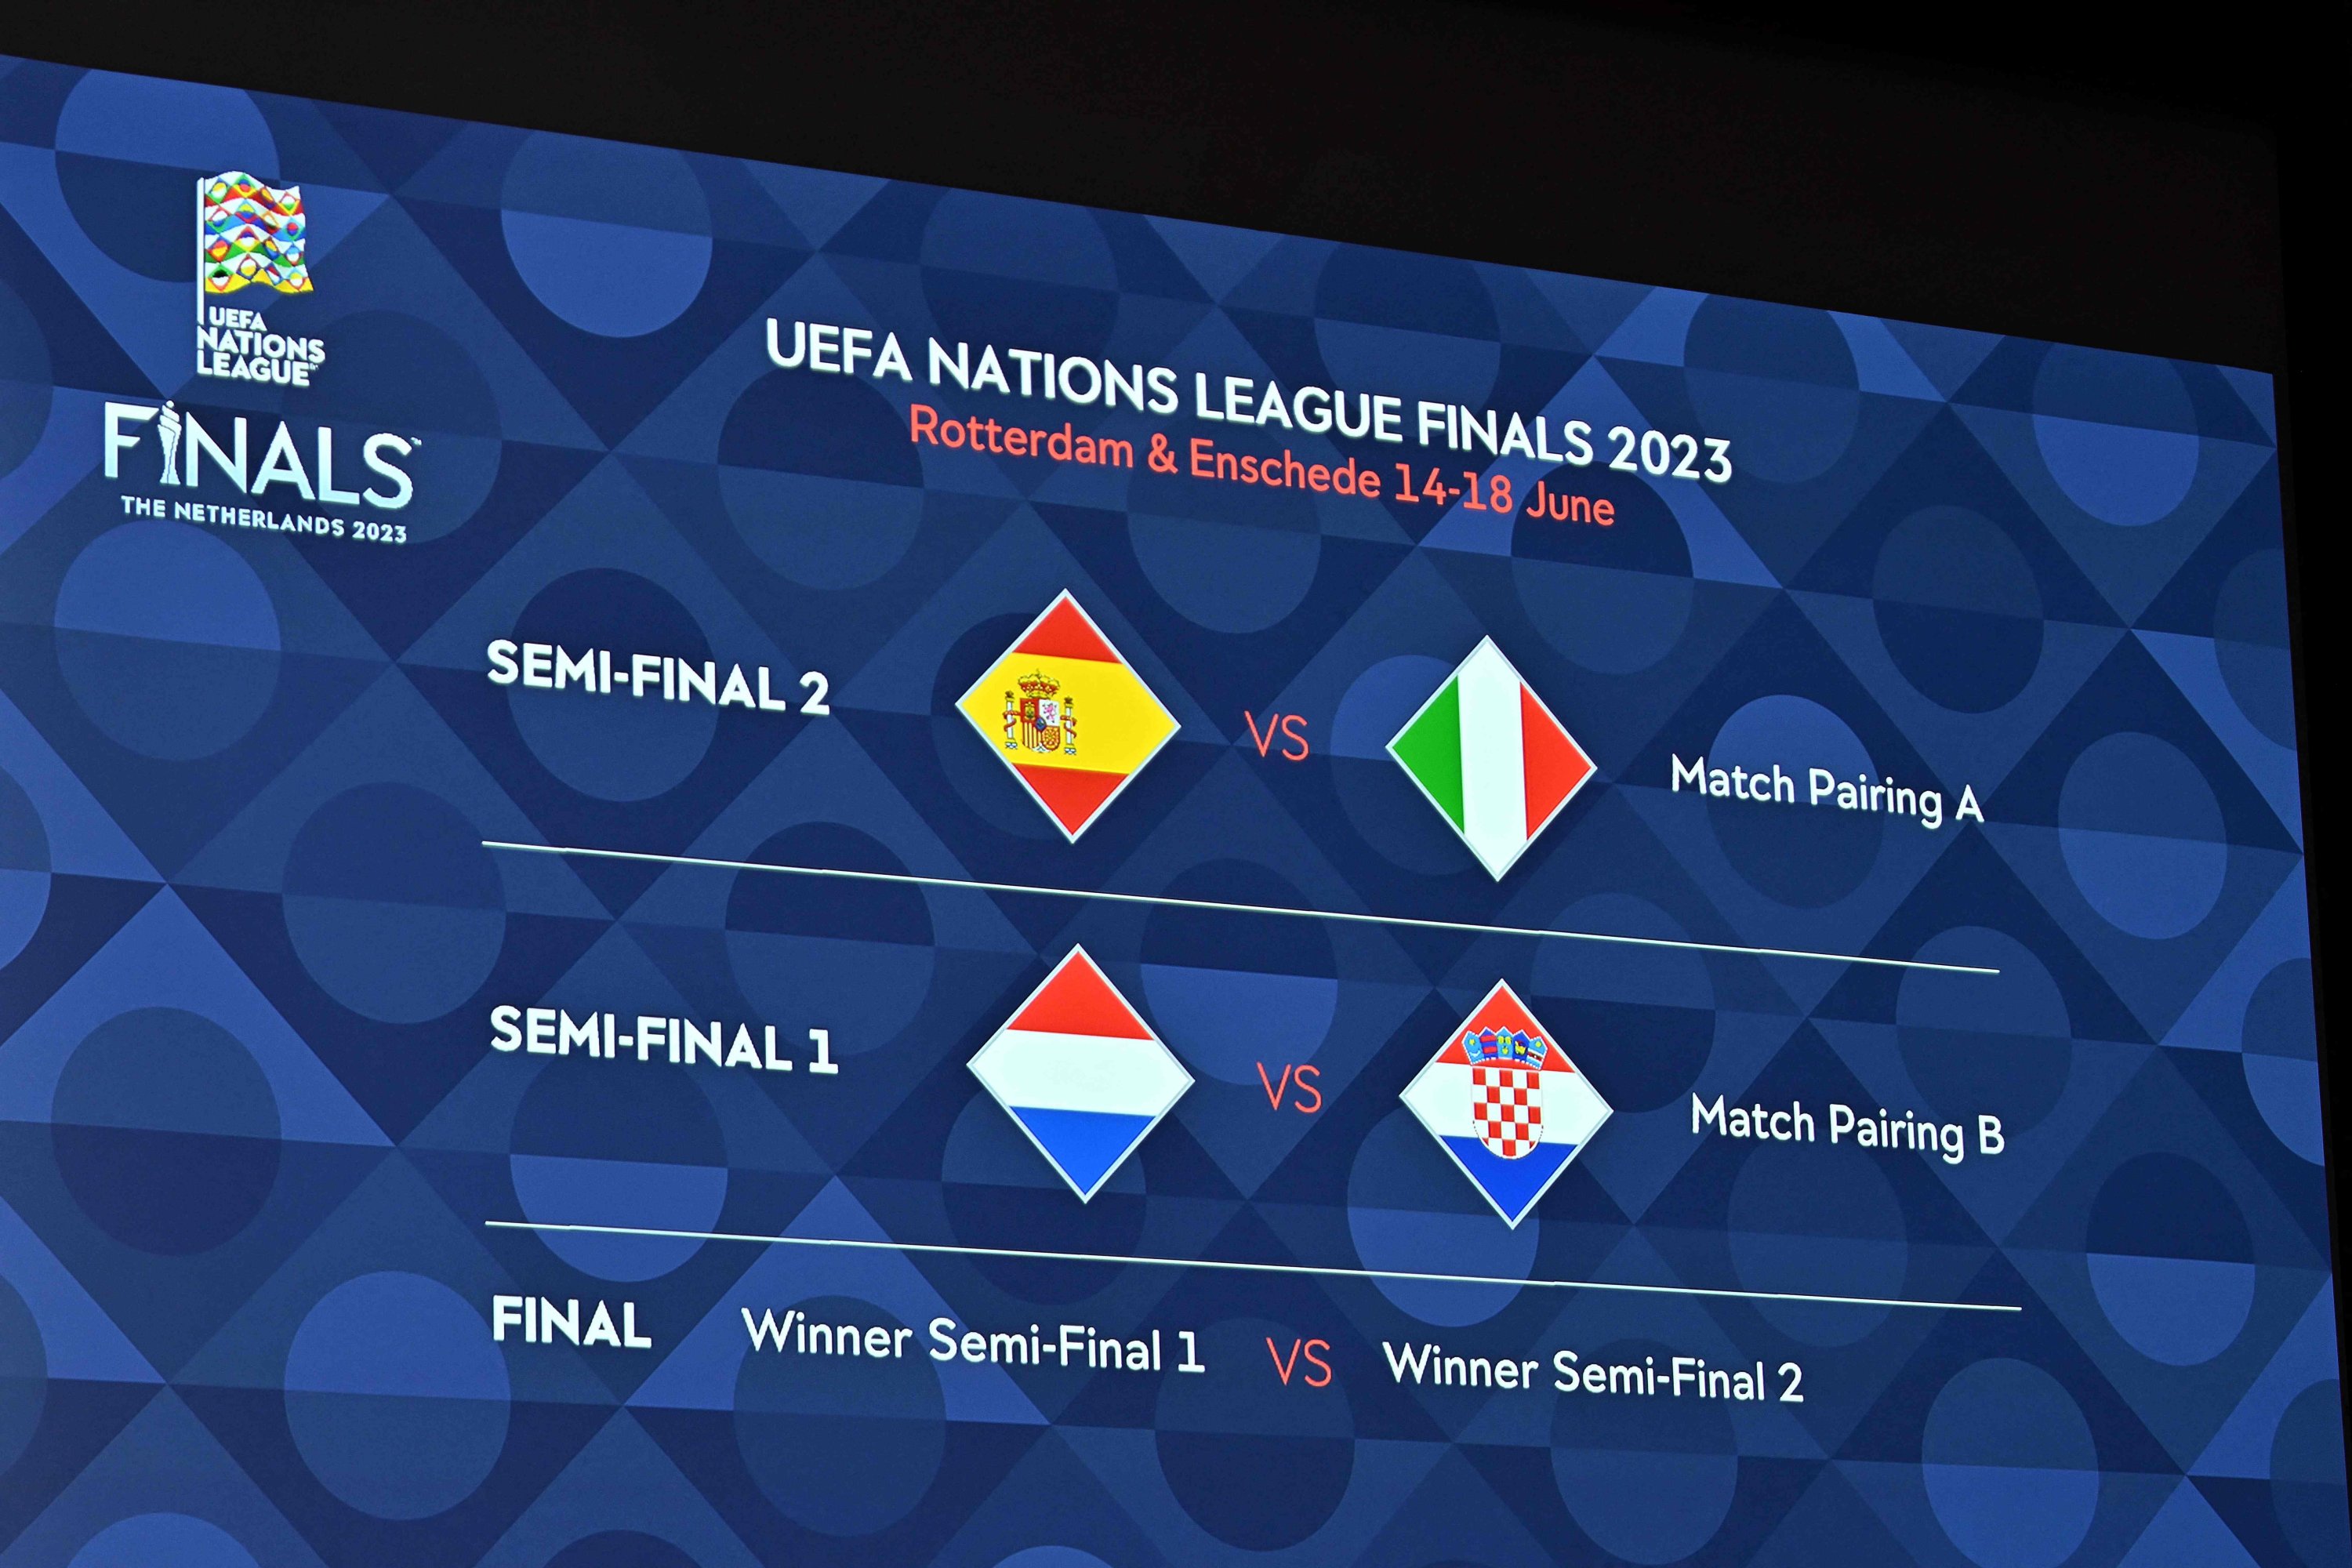 Los resultados del sorteo se muestran en un tablero durante el sorteo de la final de fútbol de la Liga de Naciones de la UEFA de 2023, Nyon, Suiza, el 25 de enero de 2023. (Foto AFP)